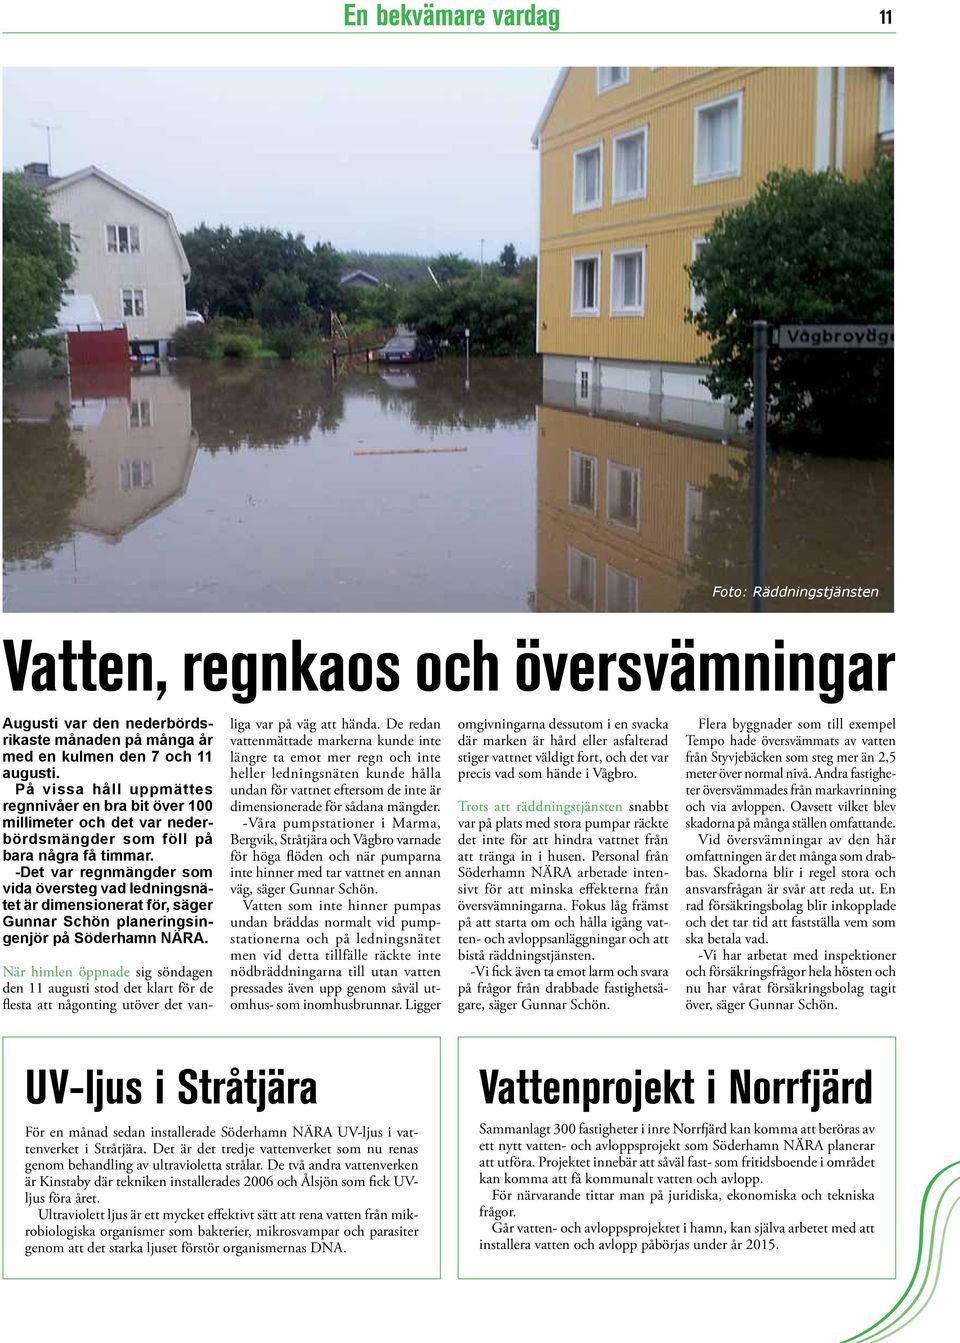 -Det var regnmängder som vida översteg vad ledningsnätet är dimensionerat för, säger Gunnar Schön planeringsingenjör på Söderhamn NÄRA.